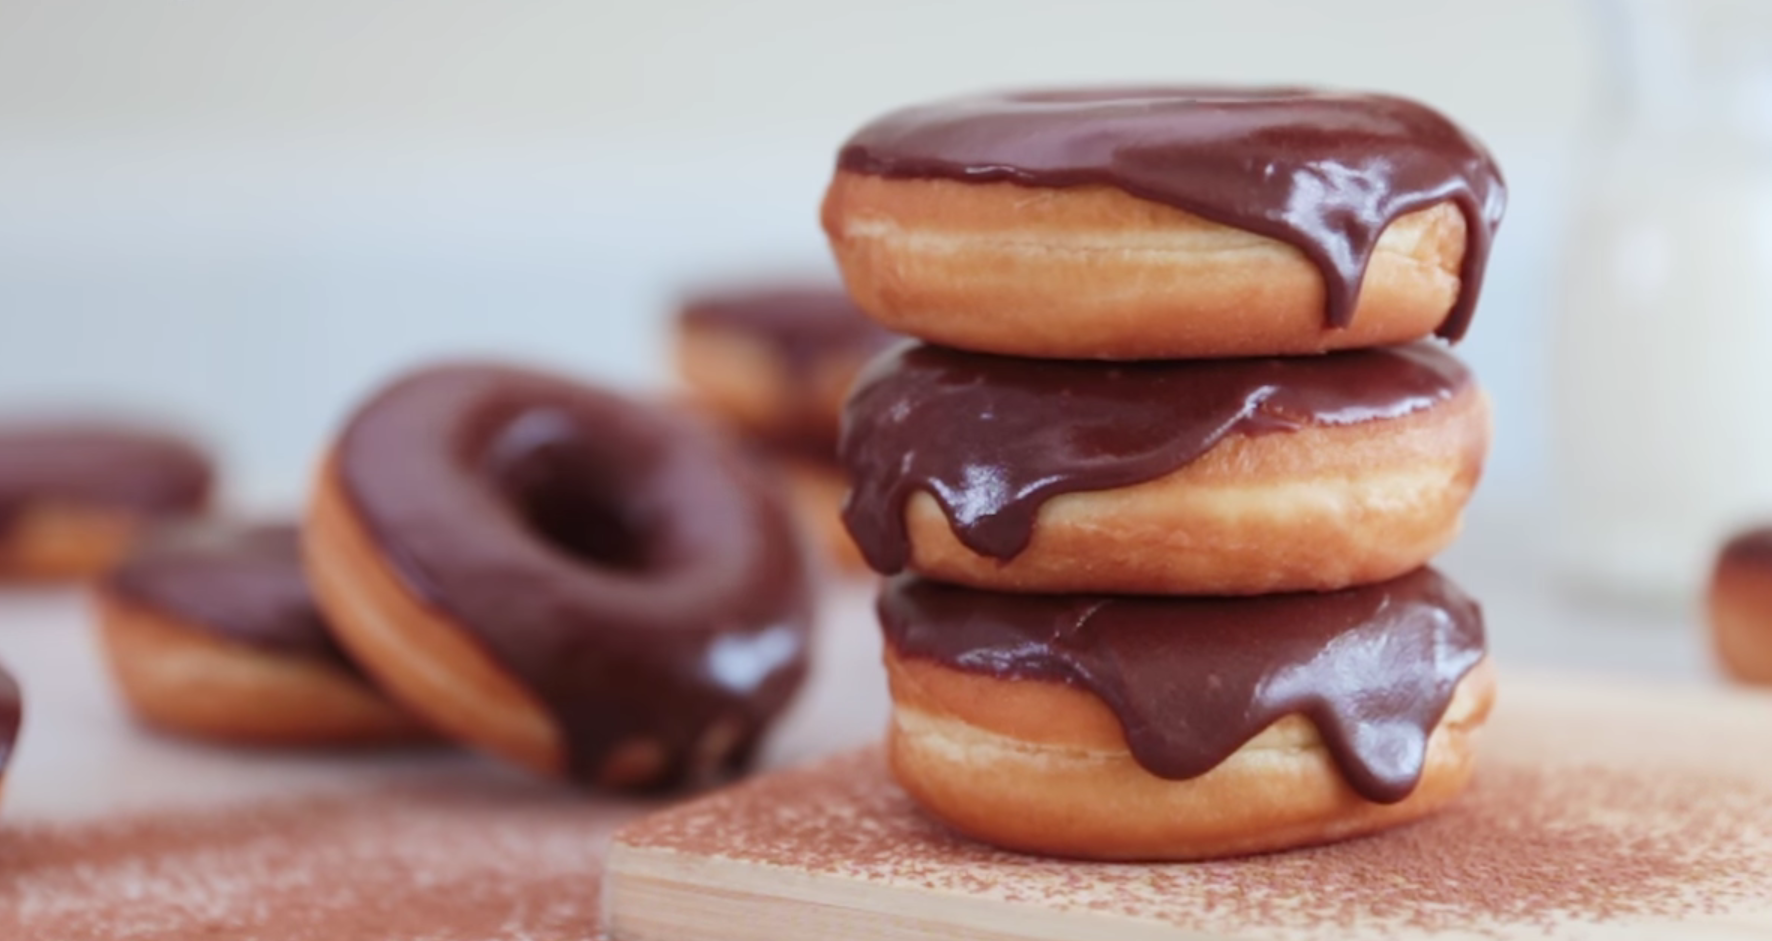 baked banana donuts with dark chocolate glaze recipe